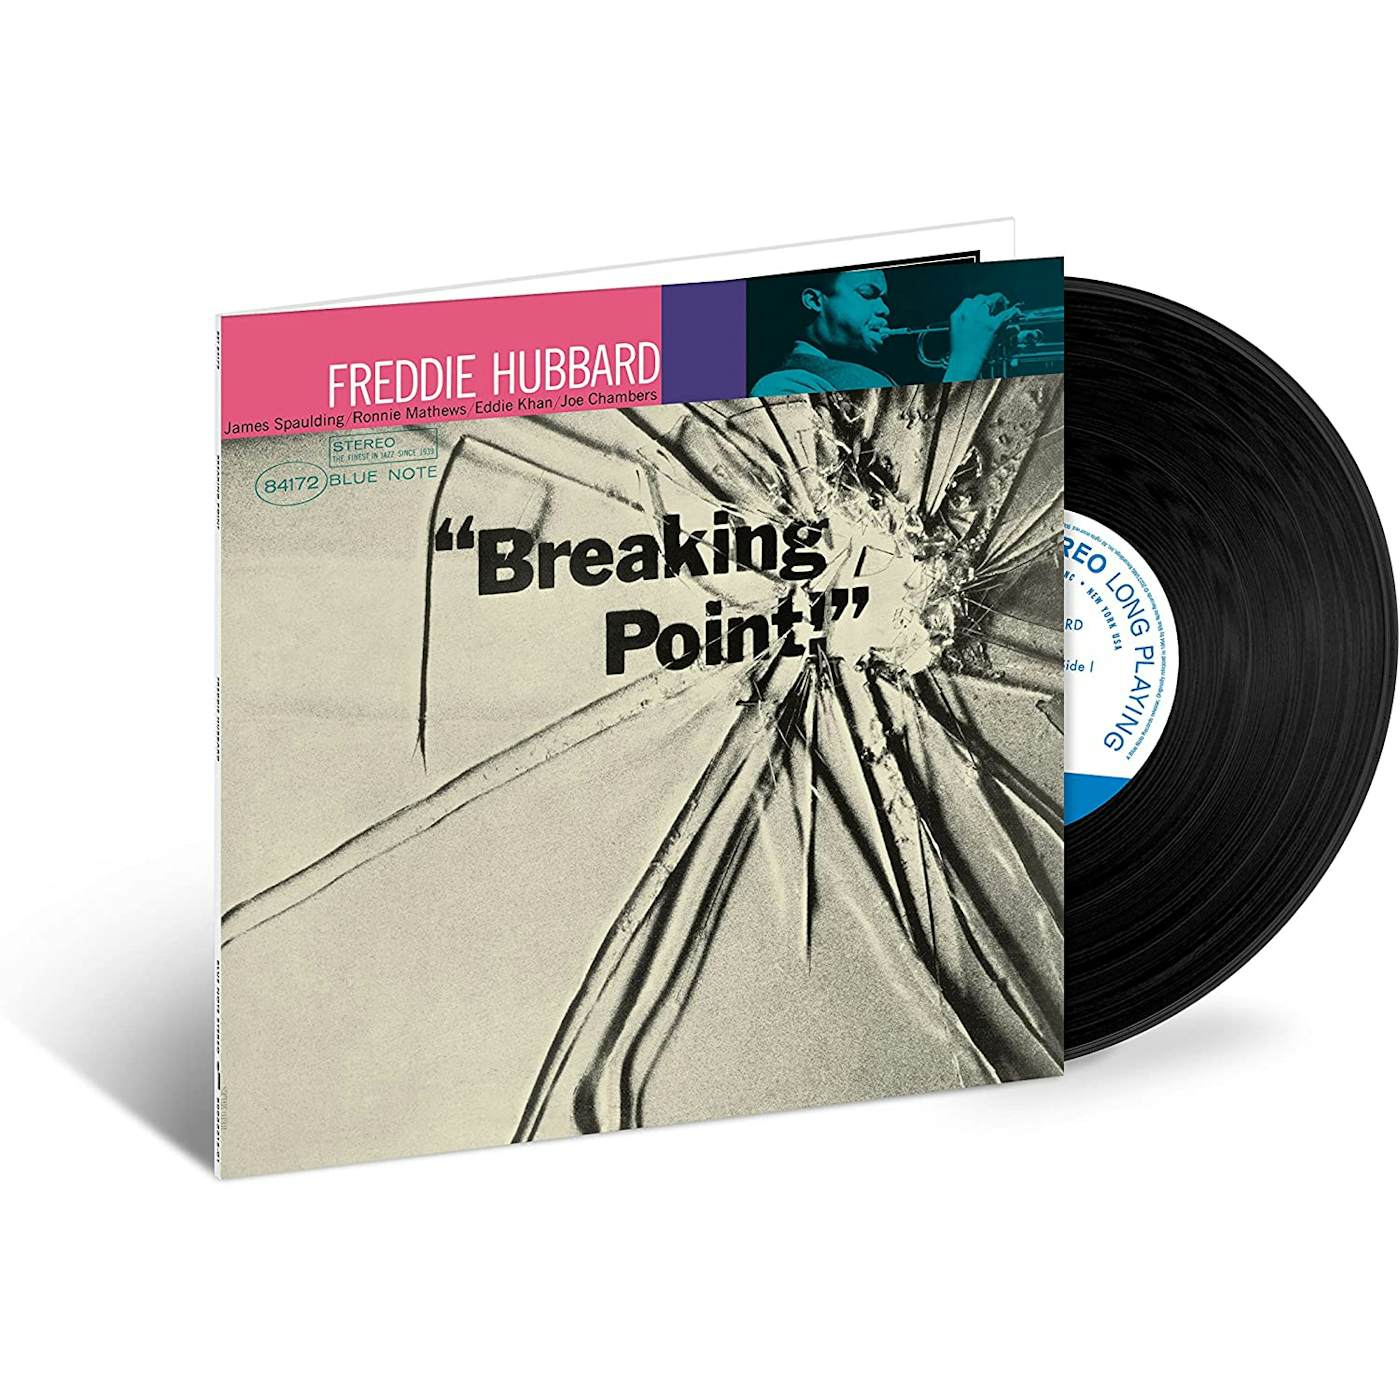 Freddie Hubbard - Breaking Point (Tone Poet series)